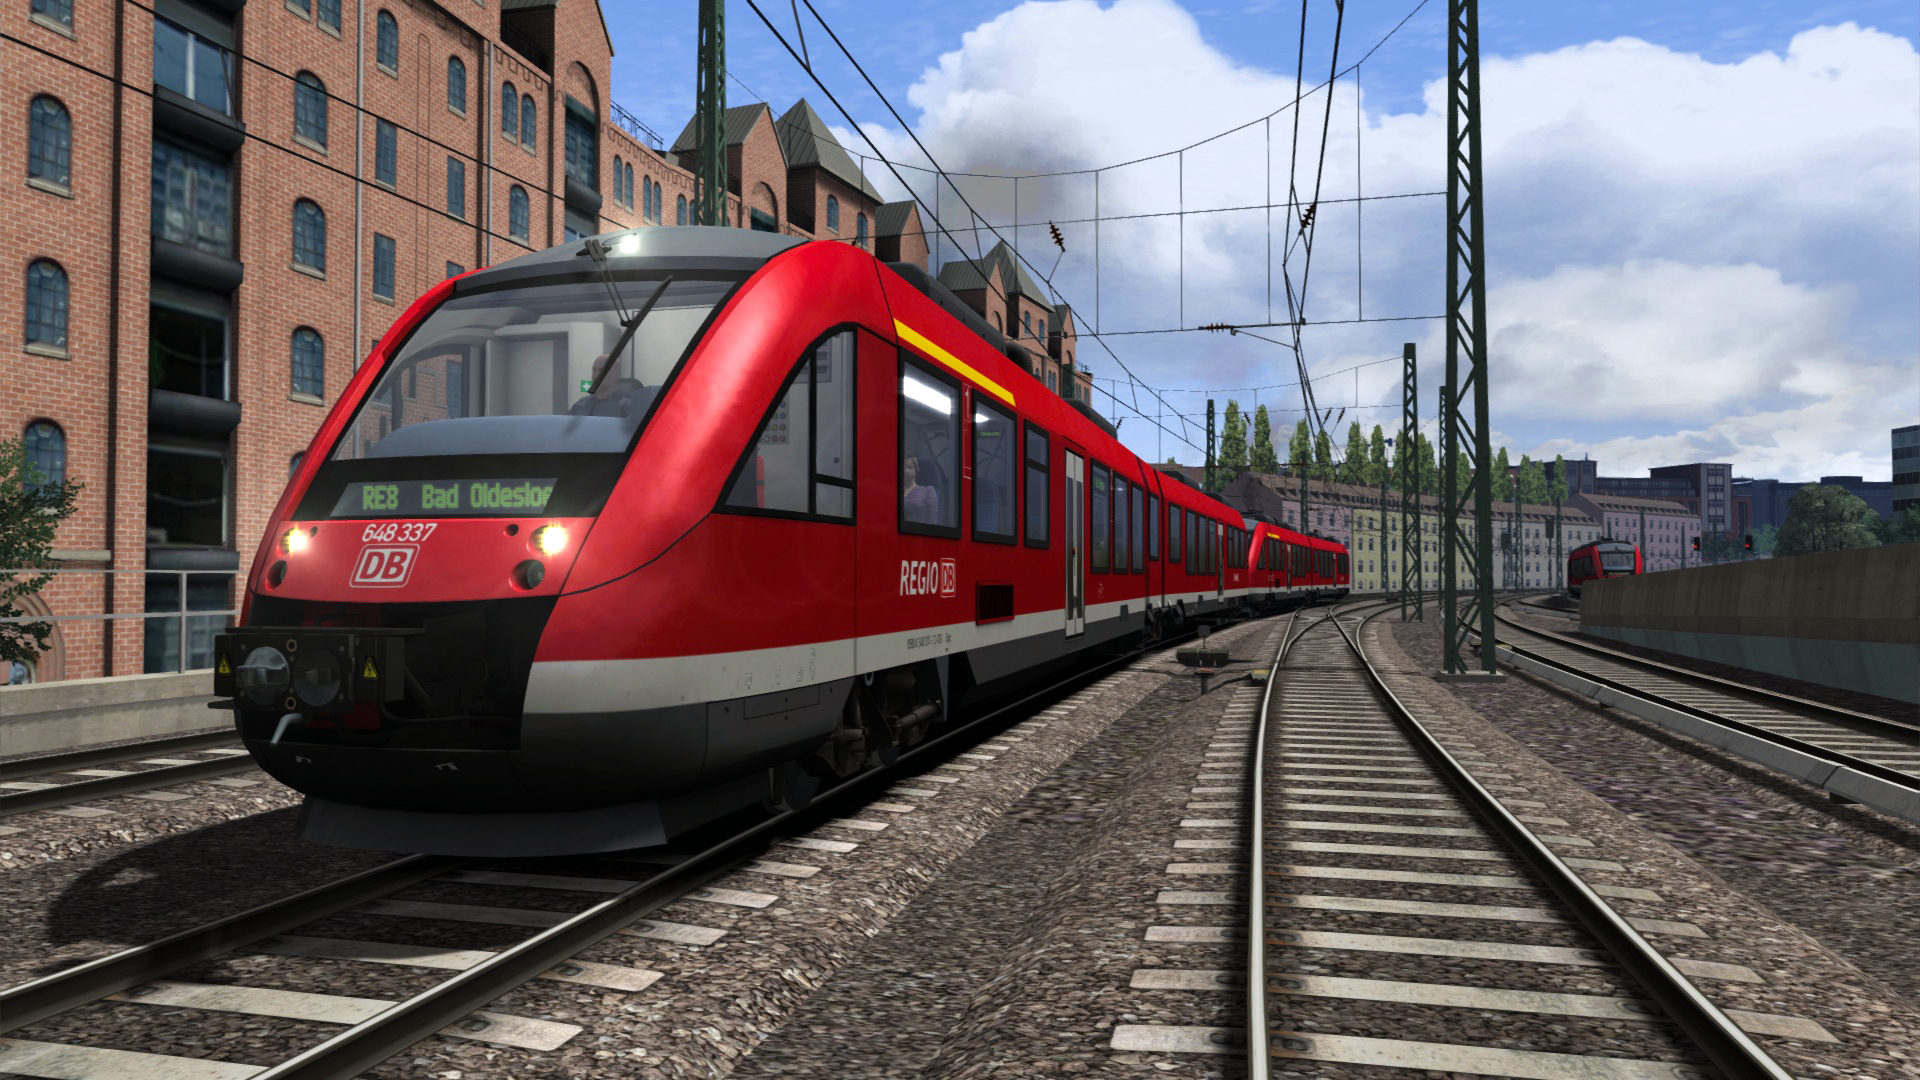 Train Simulator Classic - DB BR 648 Loco Add-On DLC Steam CD Key, 0.43 usd